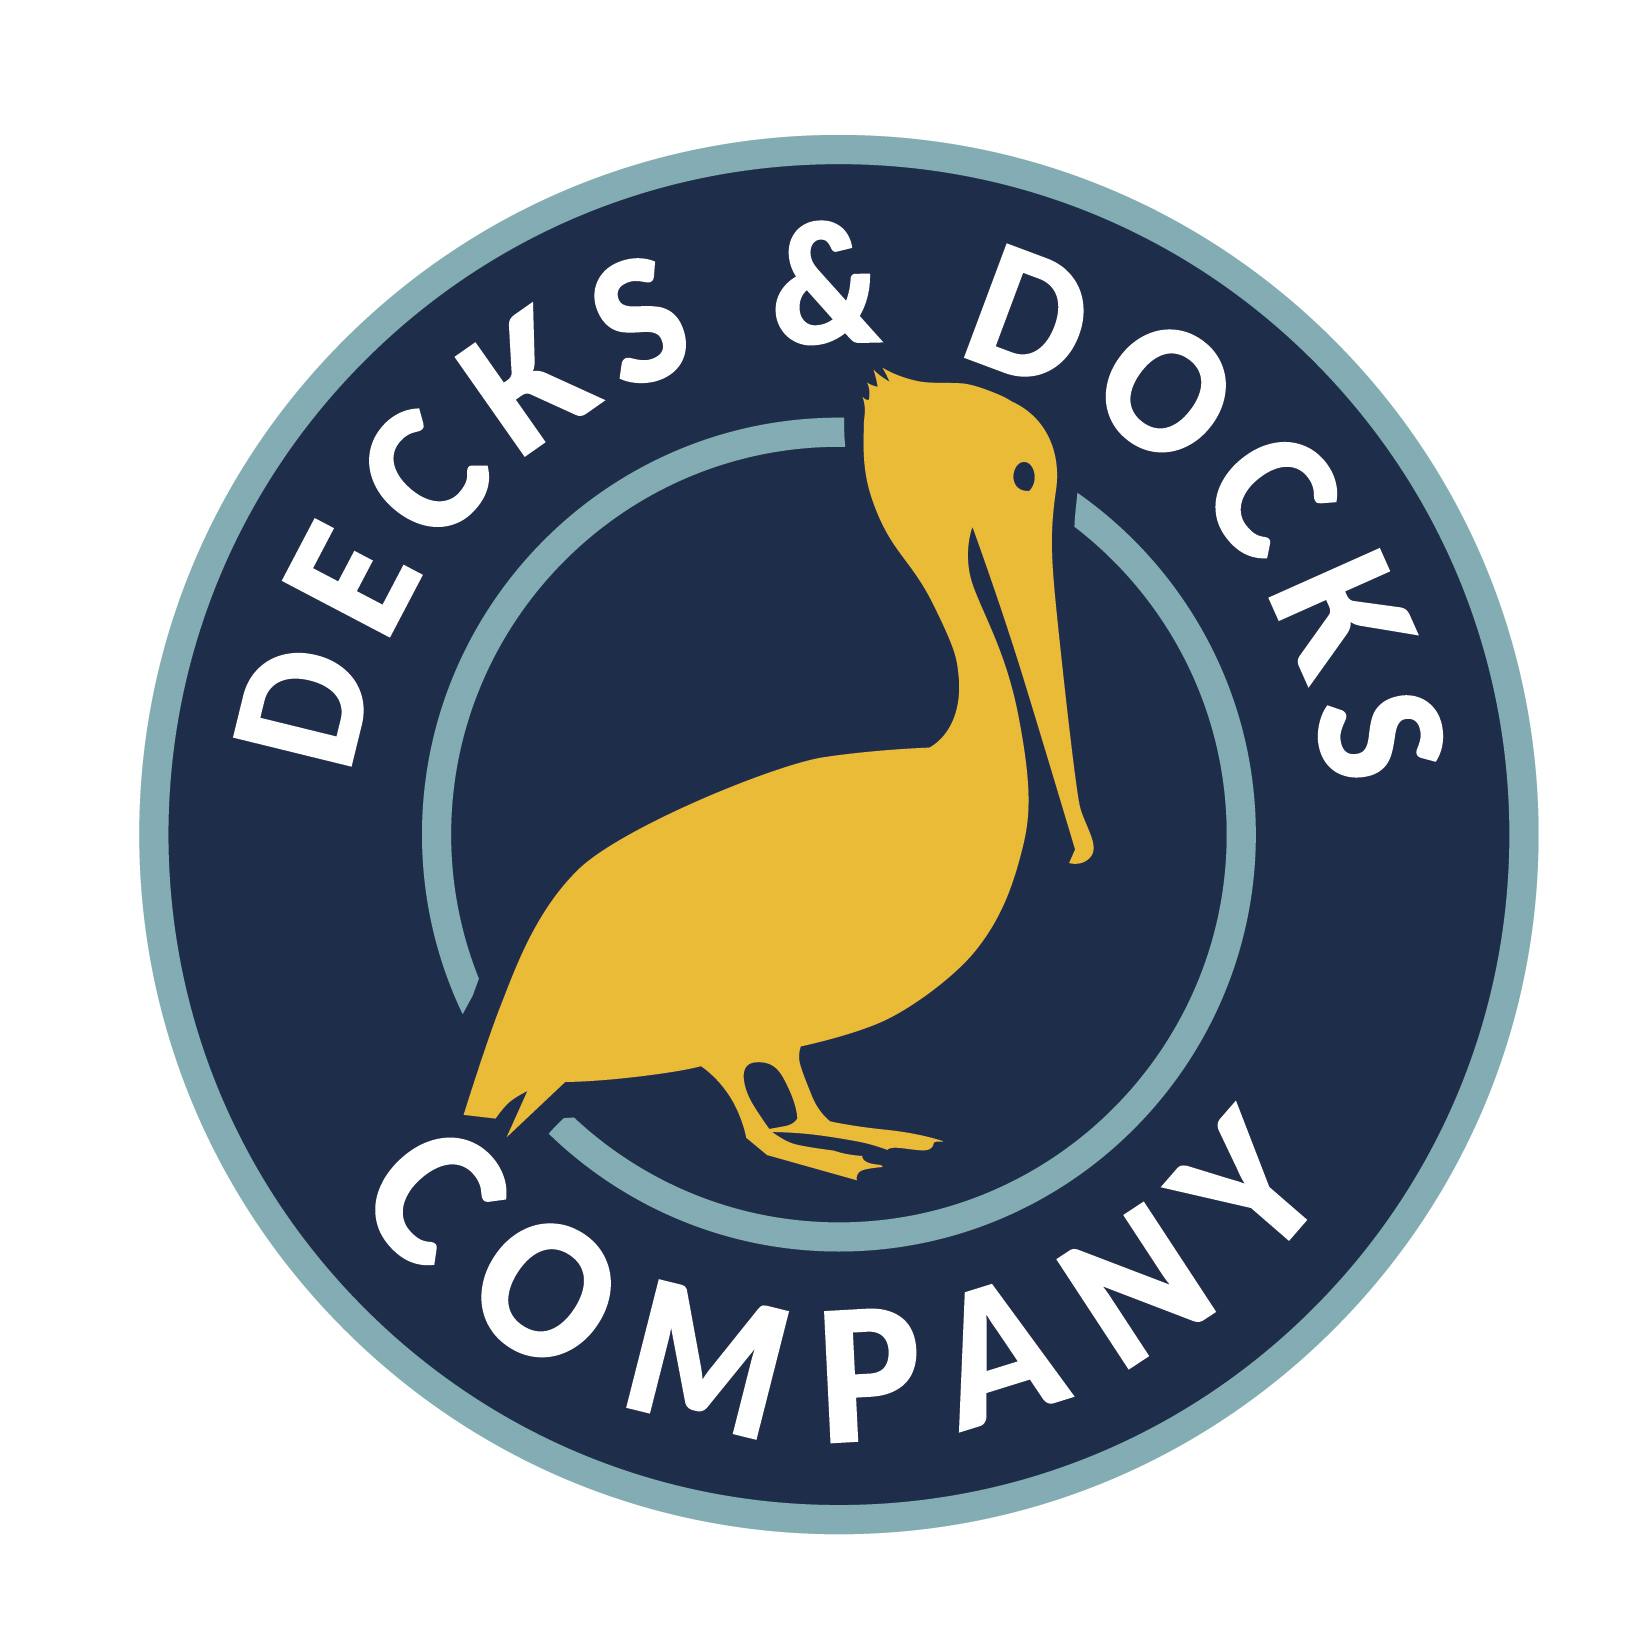 Decks & Docks - Clearwater, FL 